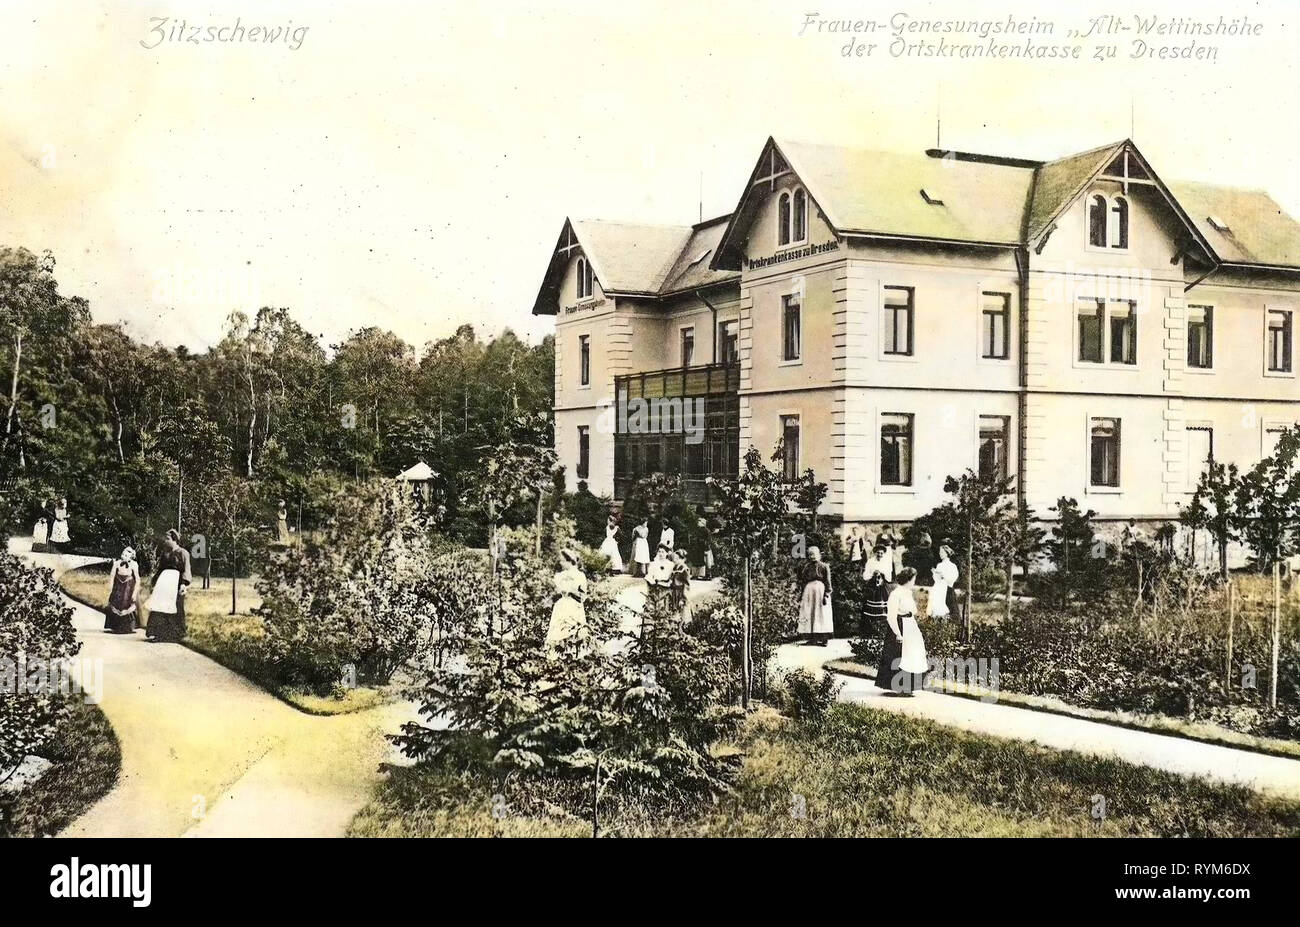 Frauen-Genesungsheim Alt-Wettinhöhe 1903, Landkreis Meißen, Zitzschewig, Frauengenesungsheim Alt Wettinshöhe, Germania Foto Stock